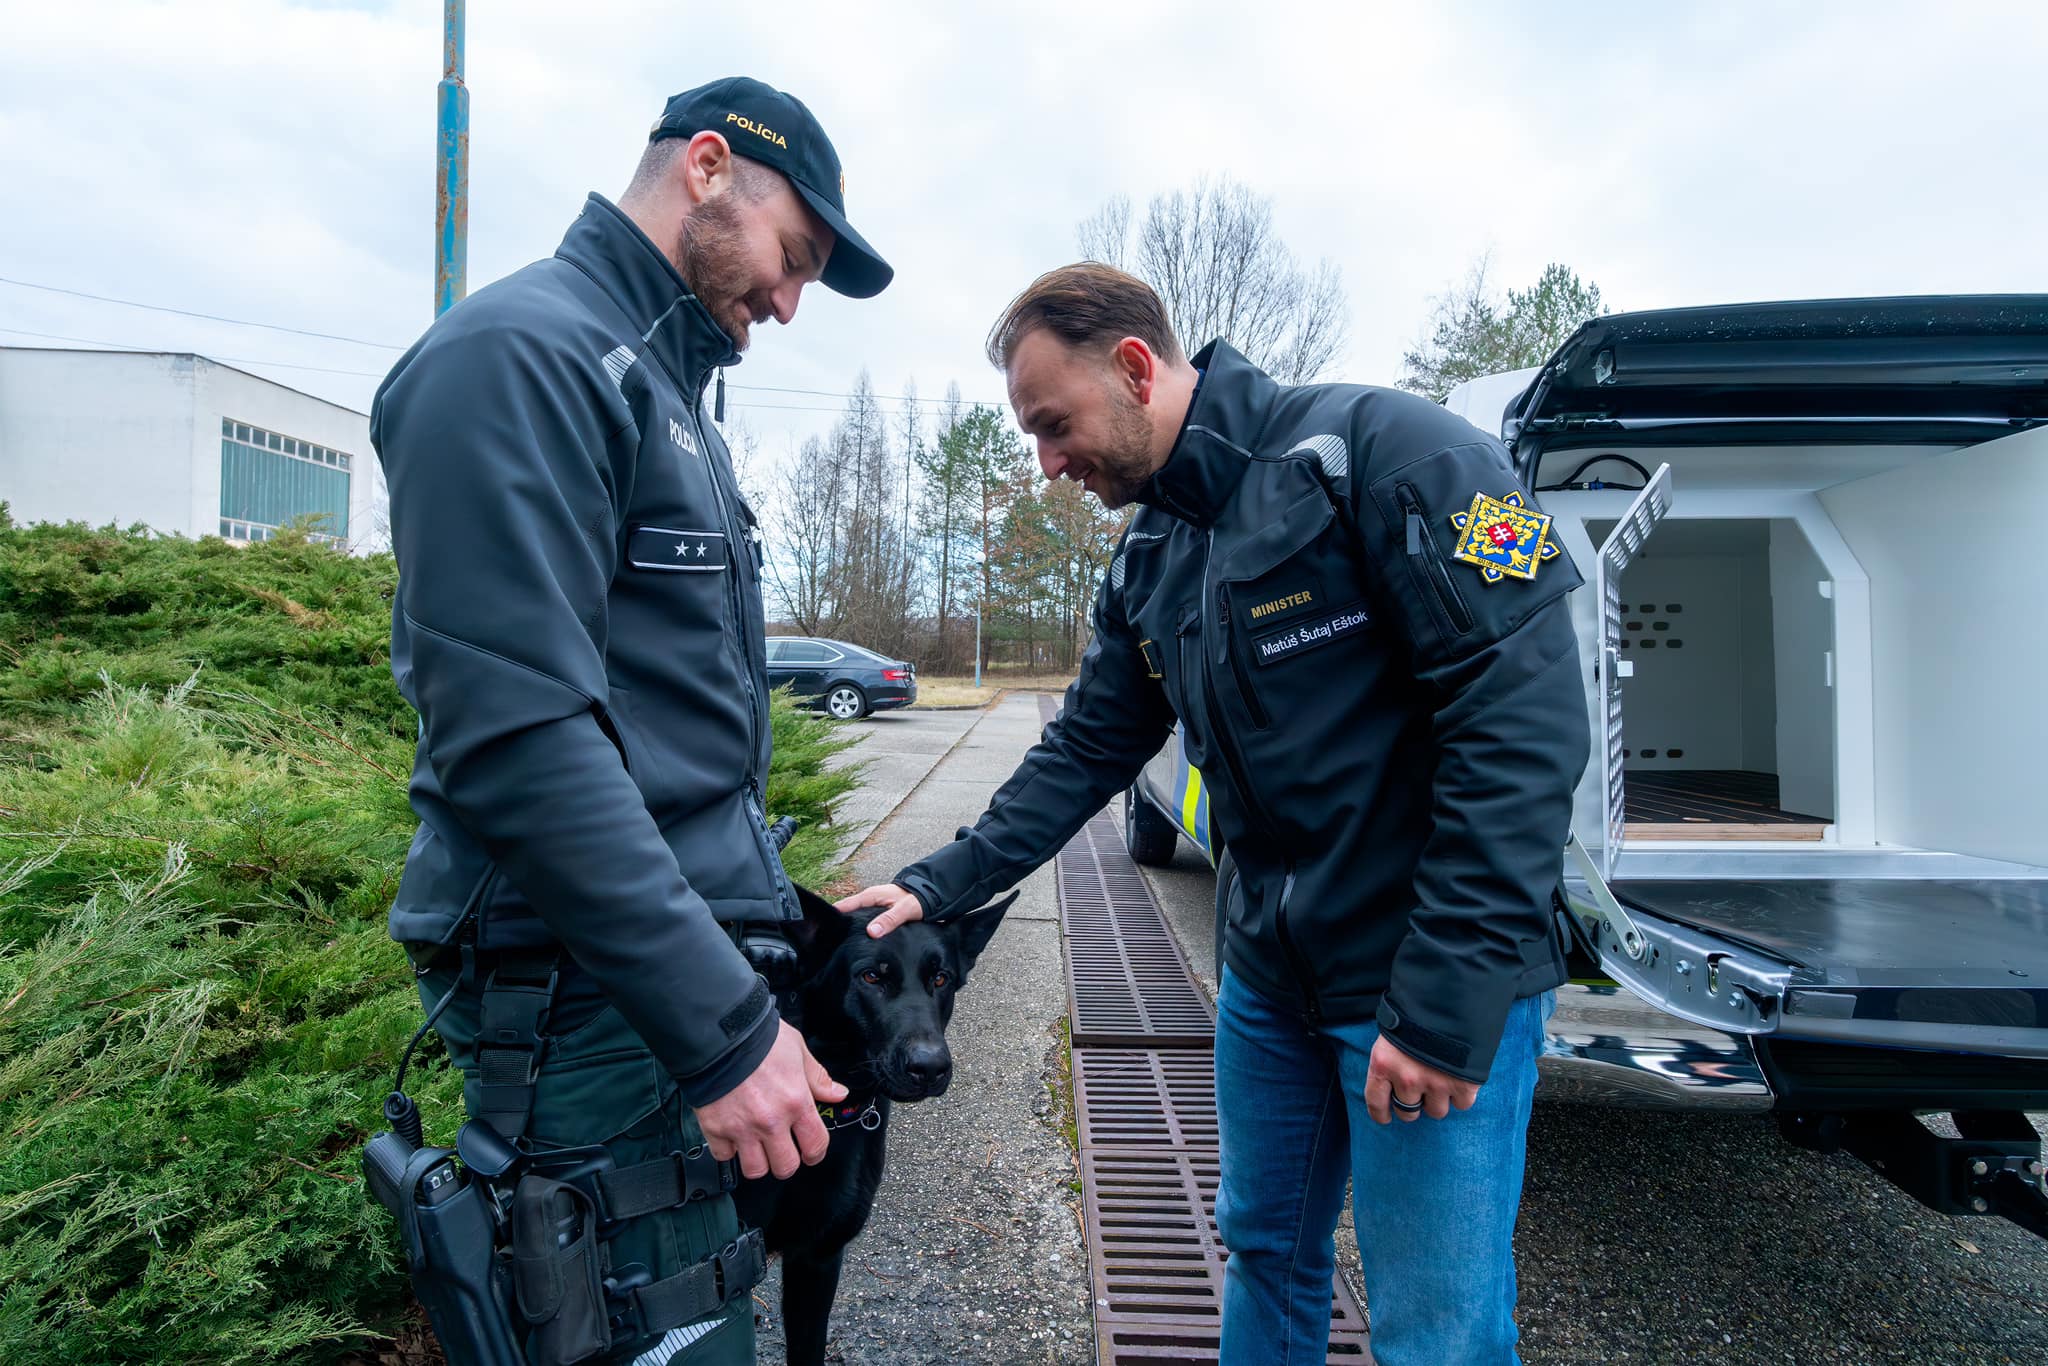 Stovky policajných psov denne dohliadajú na bezpečnosť, nové autá im pomôžu v ich práci